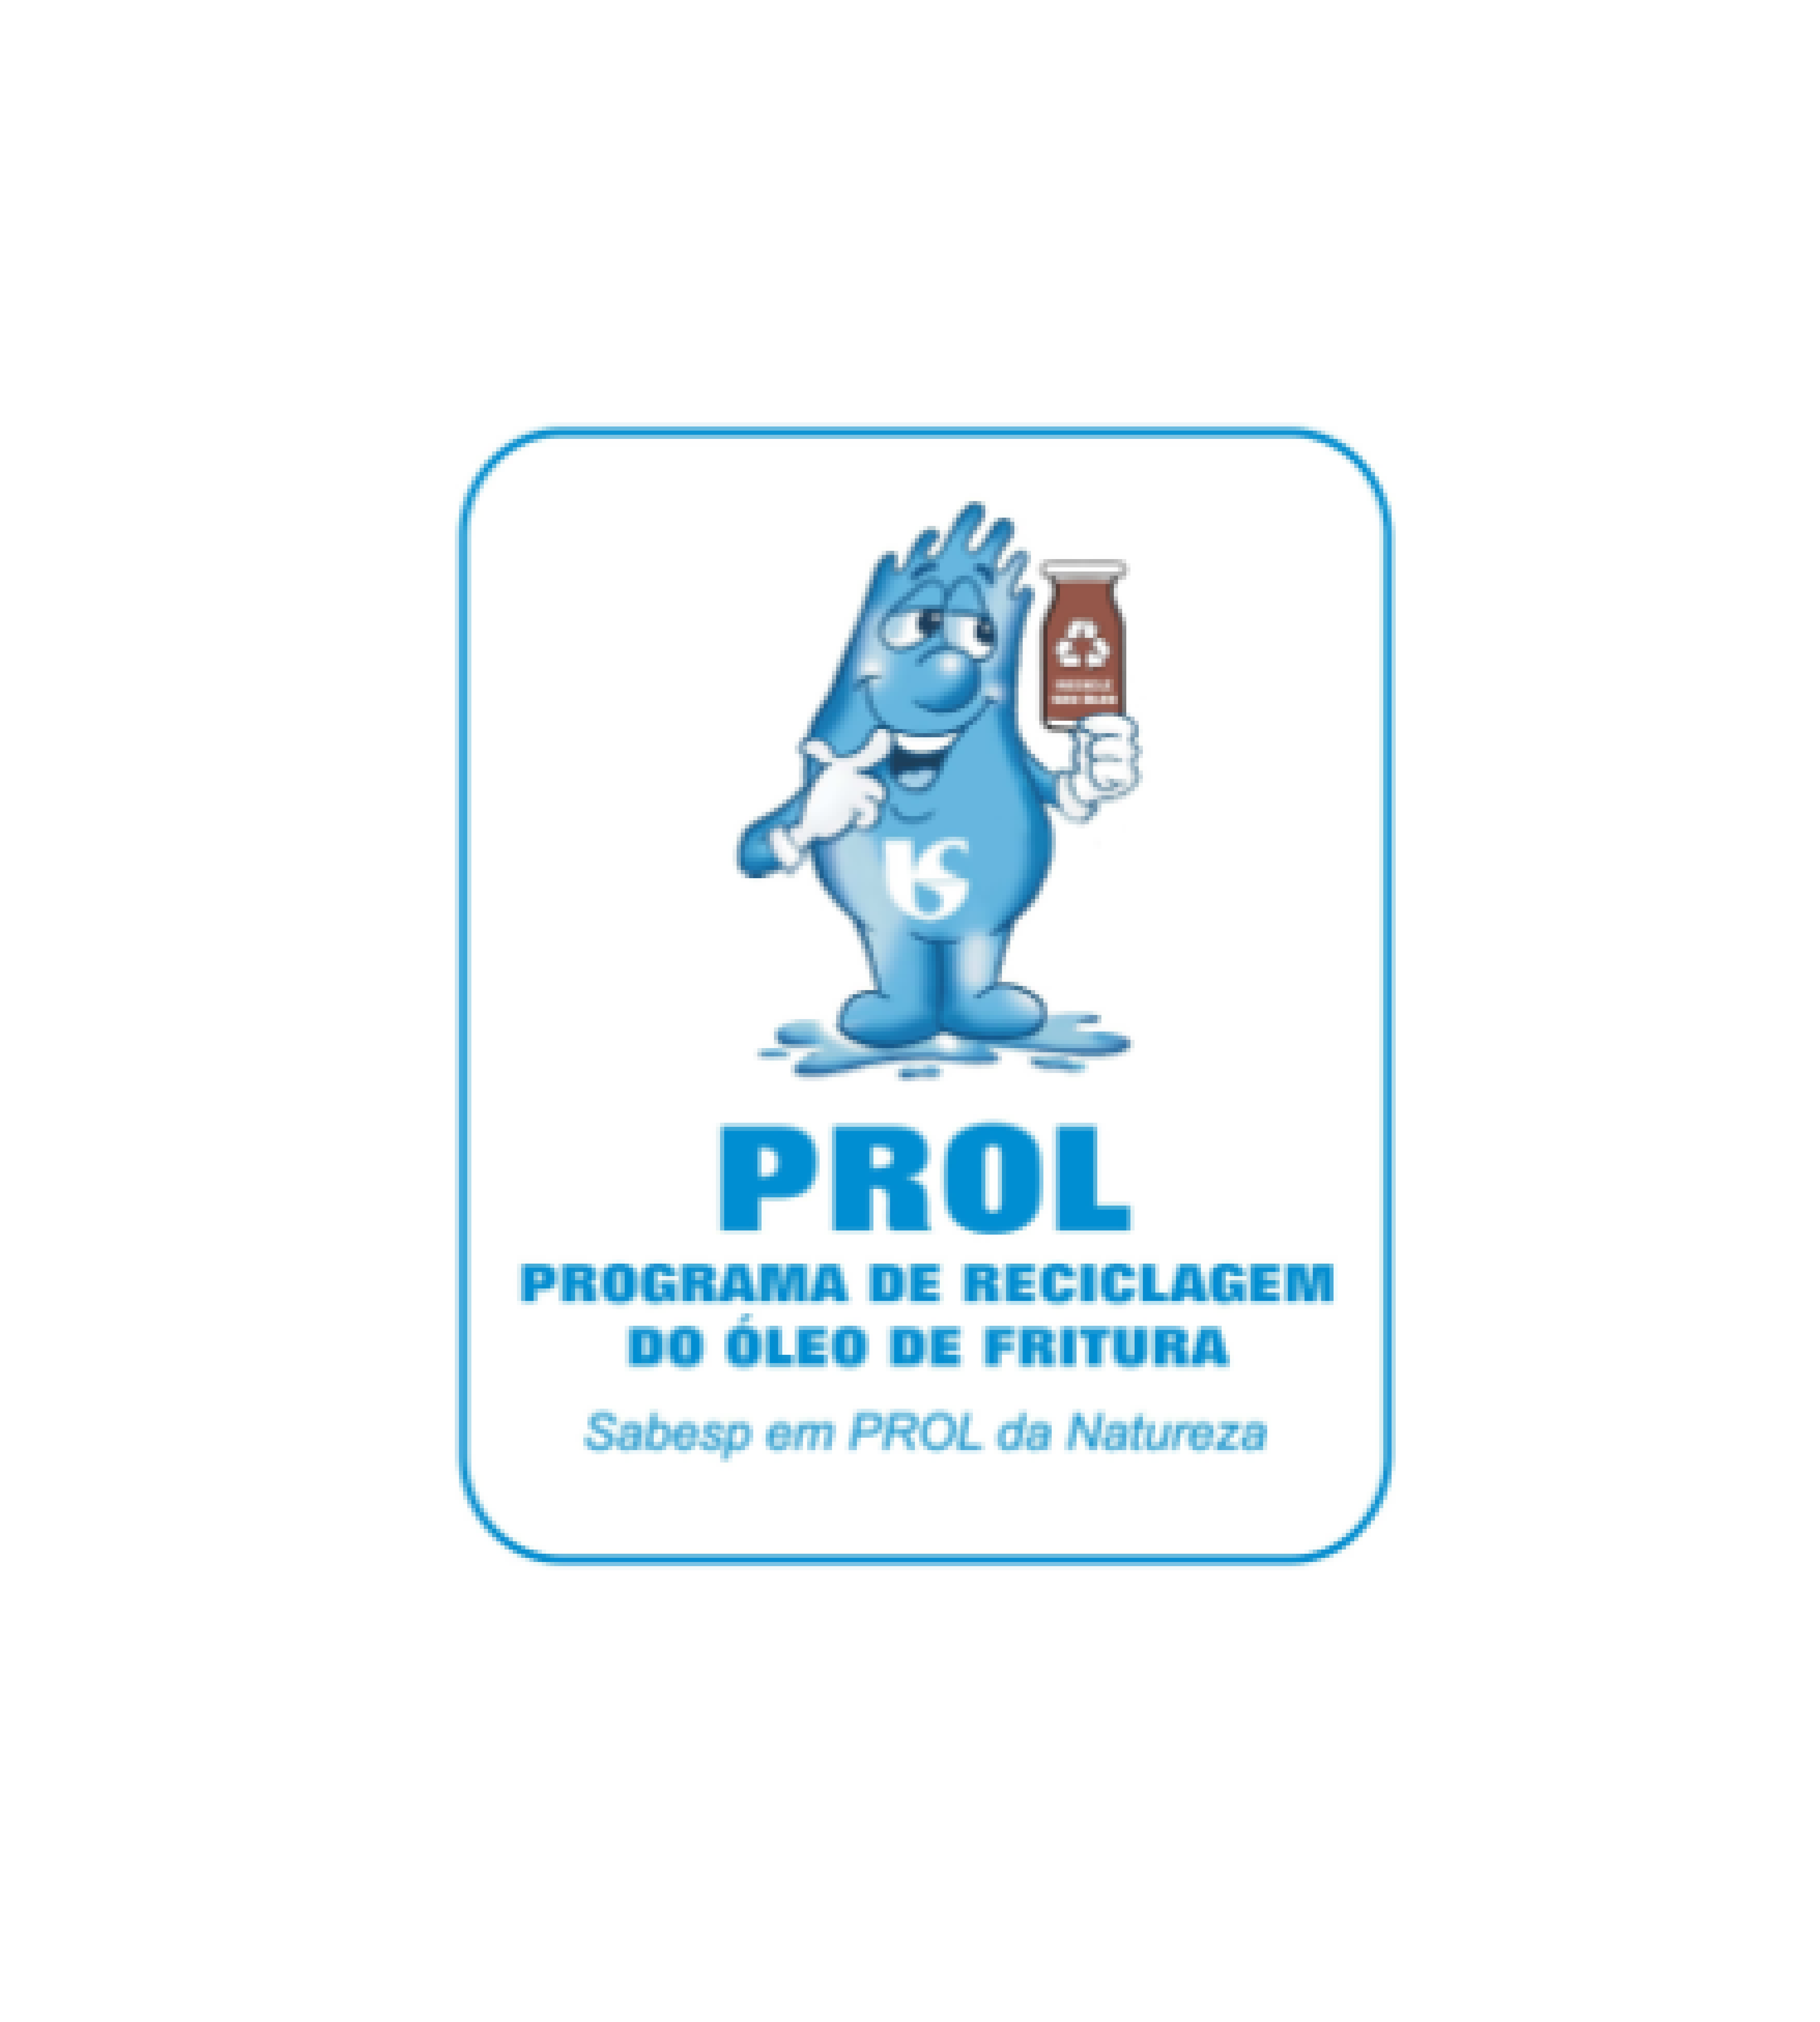 PROL – Programa de Reciclagem do Óleo de Fritura